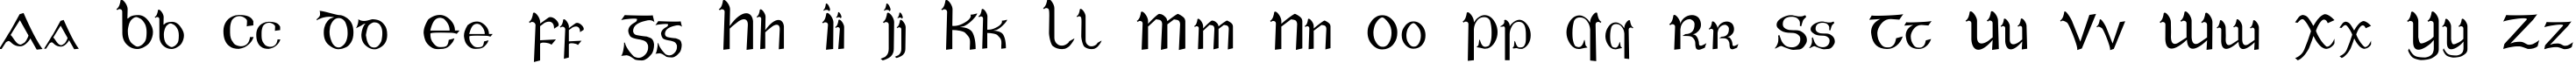 Пример написания английского алфавита шрифтом Celtic Gaelige Regular